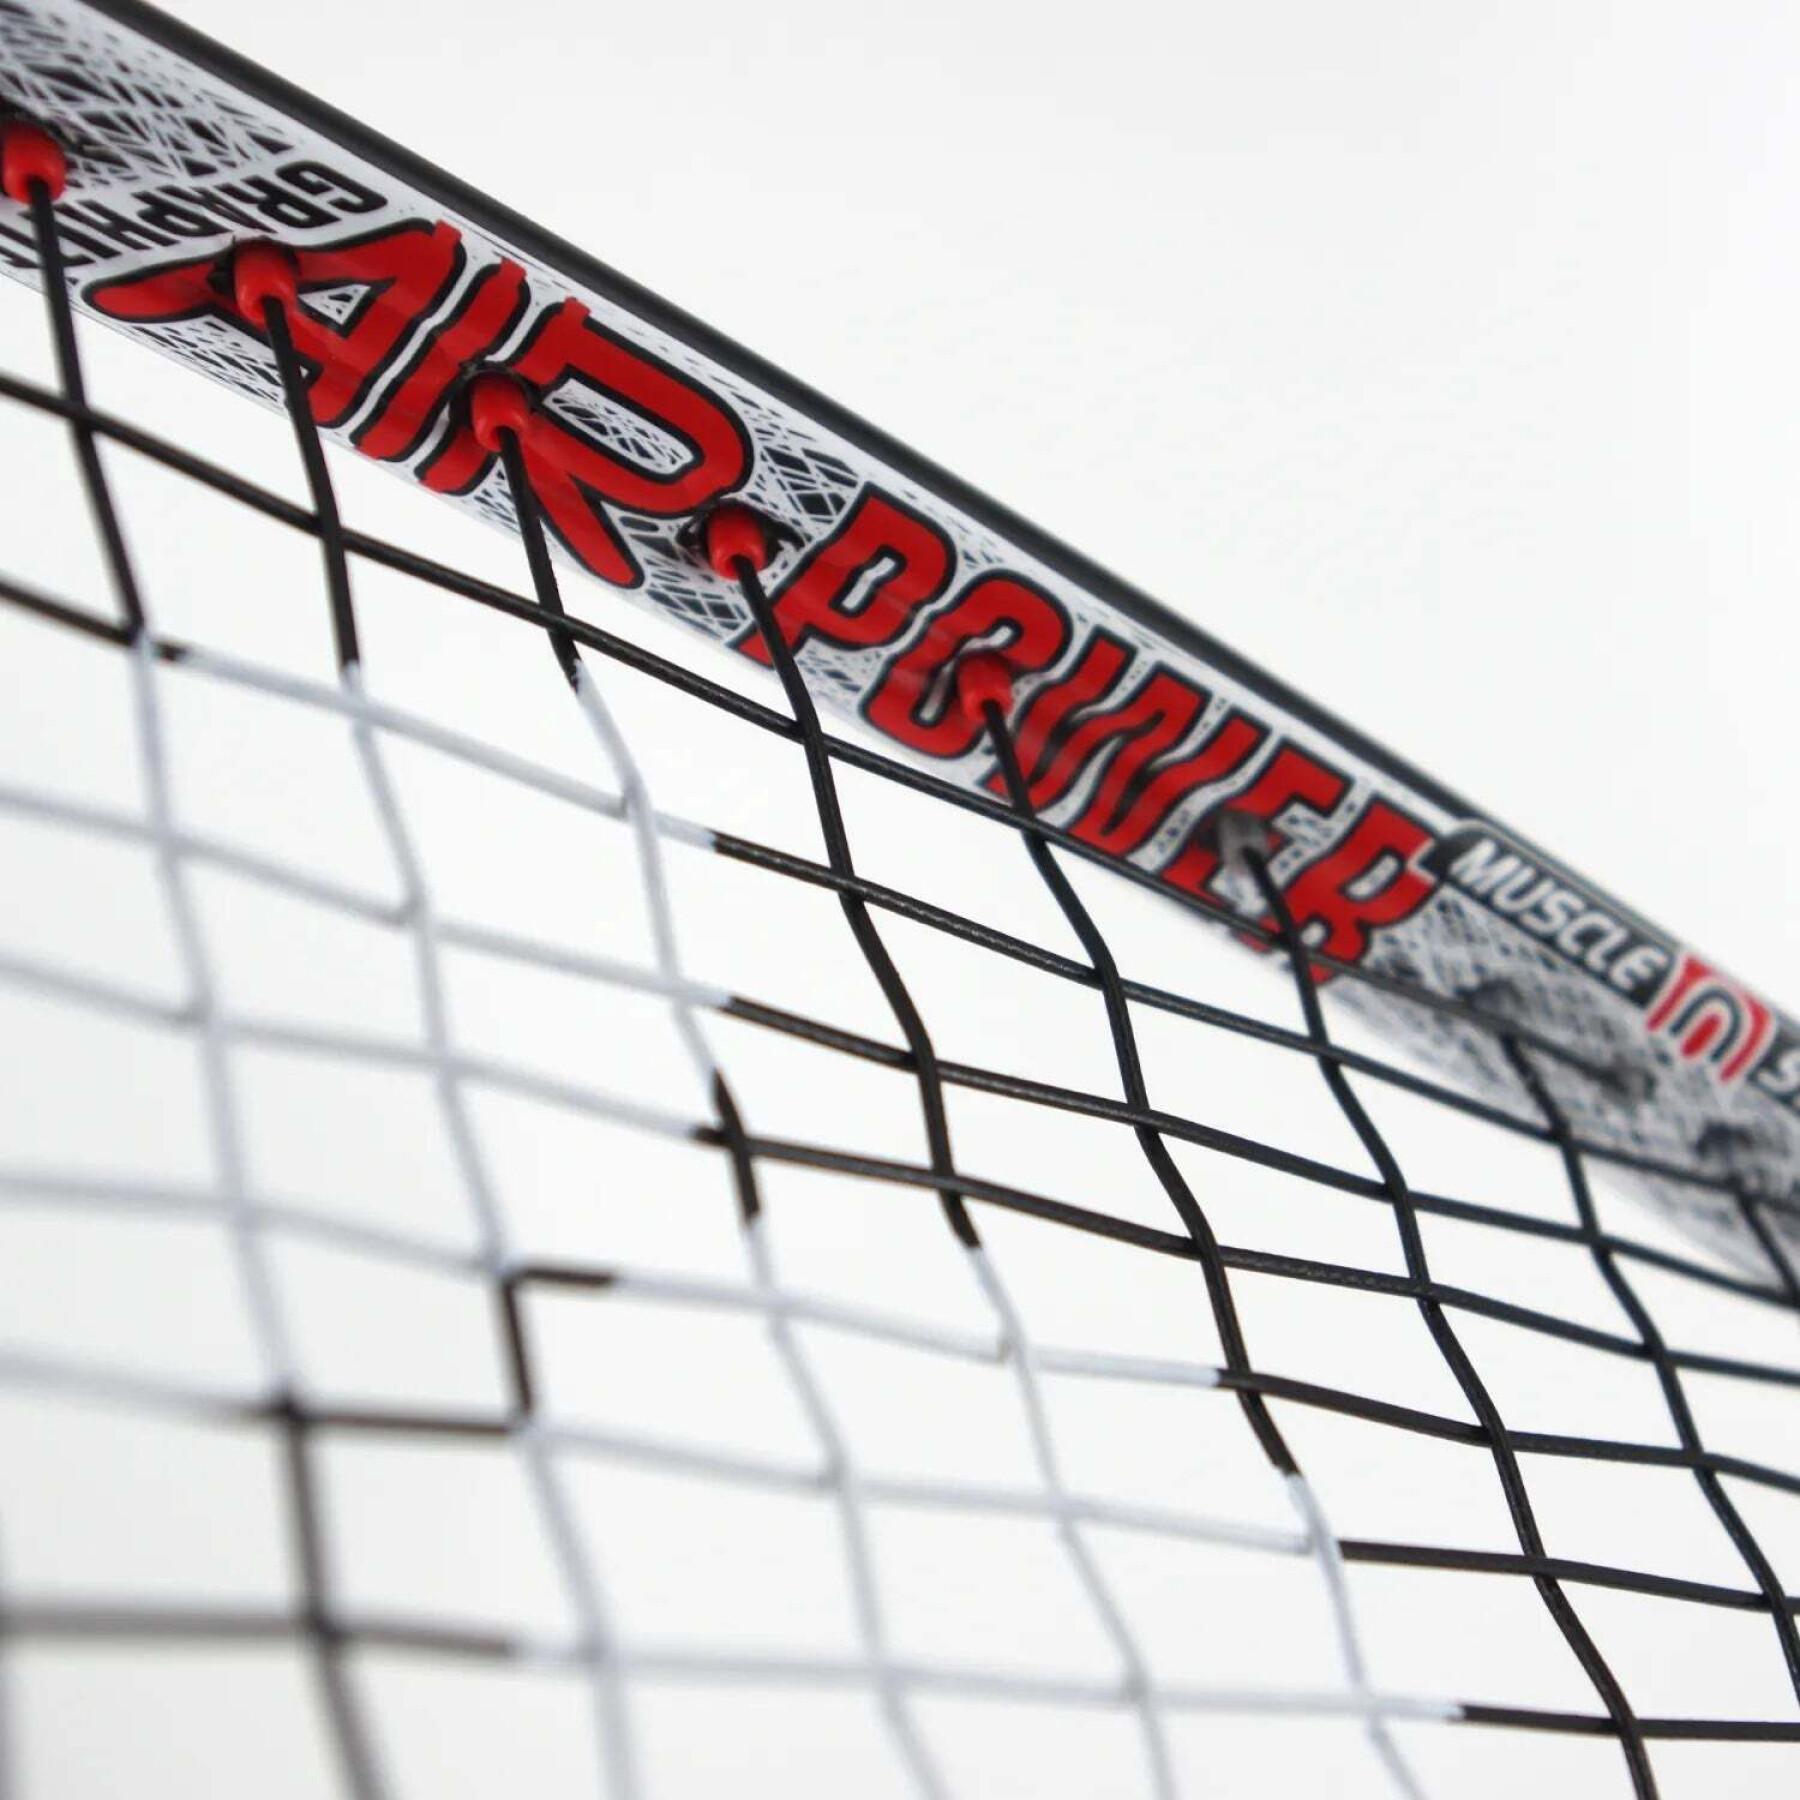 Squash racket Karakal Air Power